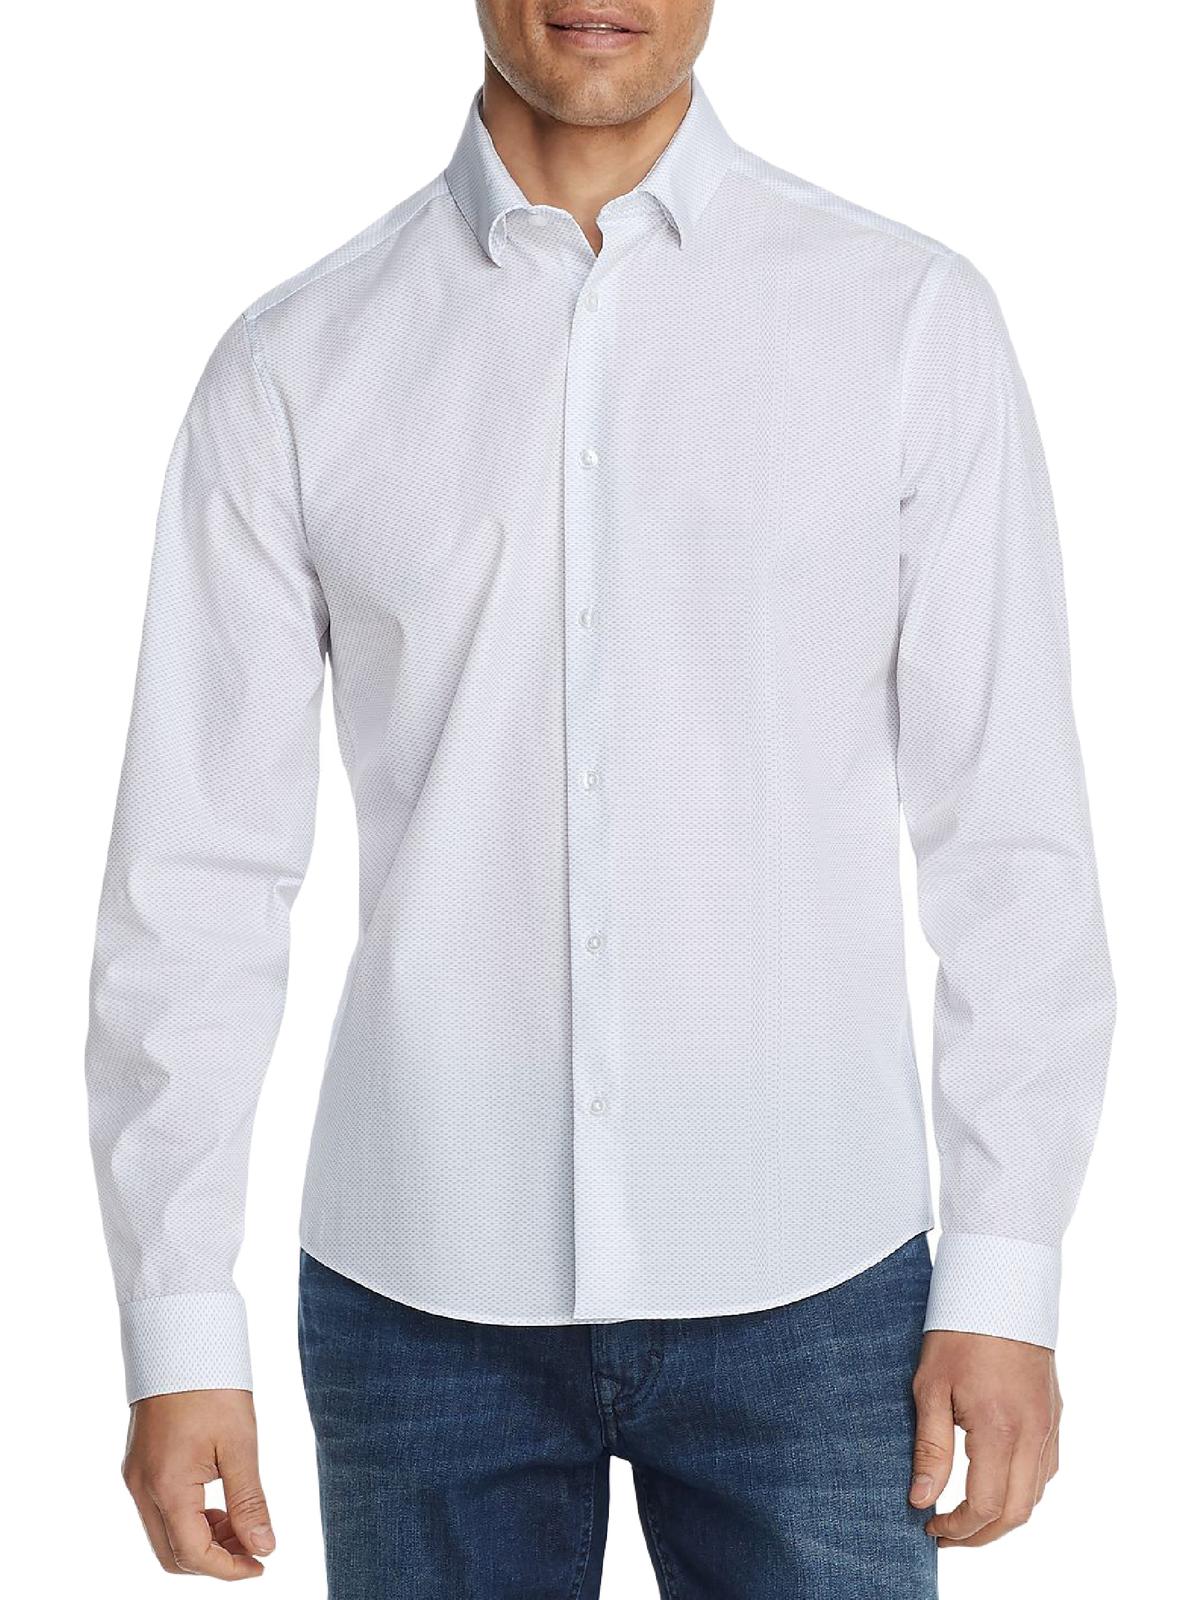 CALVIN KLEIN Mens Printed Slim Fit Button-Down Shirt